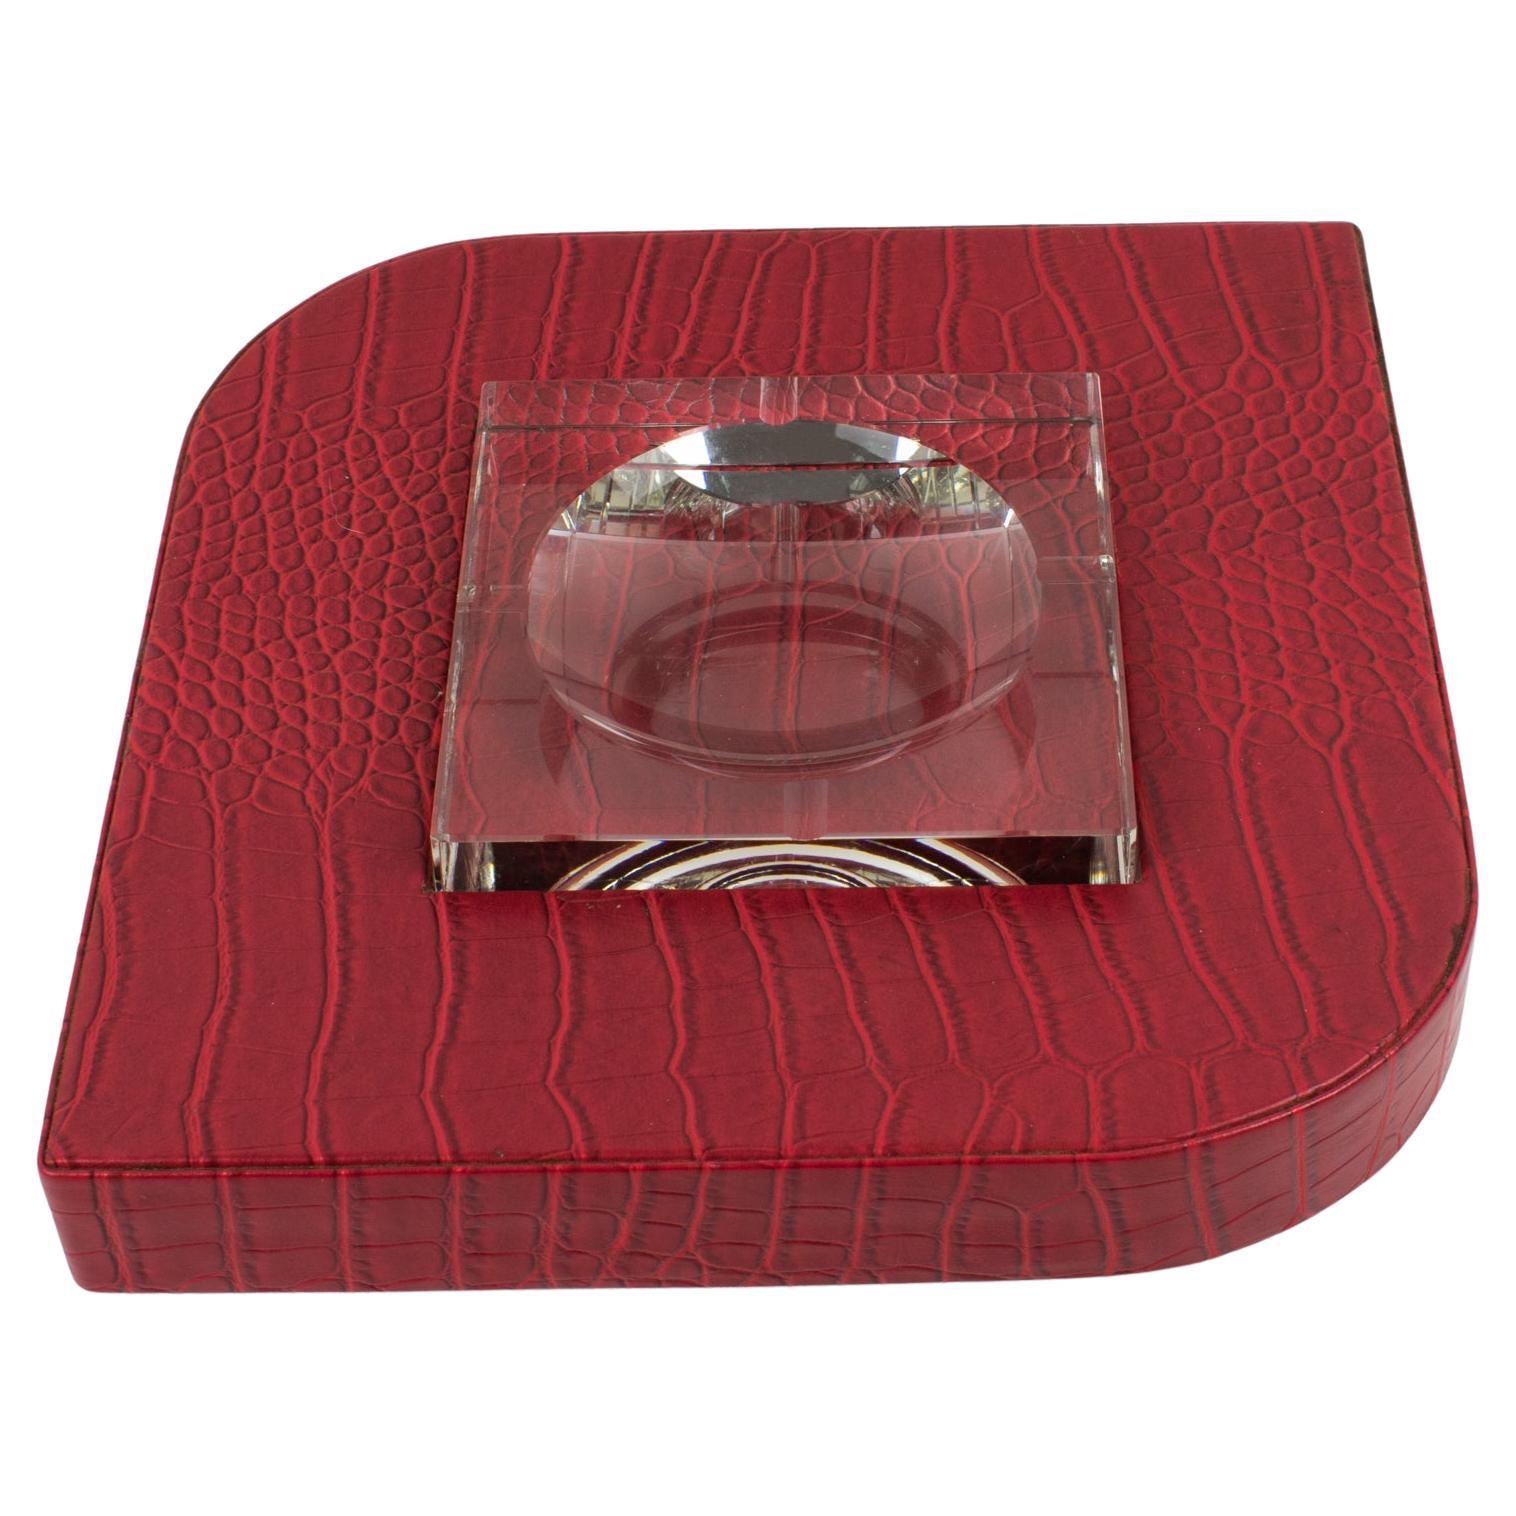 Zigarren-Aschenbecher/Ablageschale aus rotem Leder und Kristall im Dupre Lafon-Stil